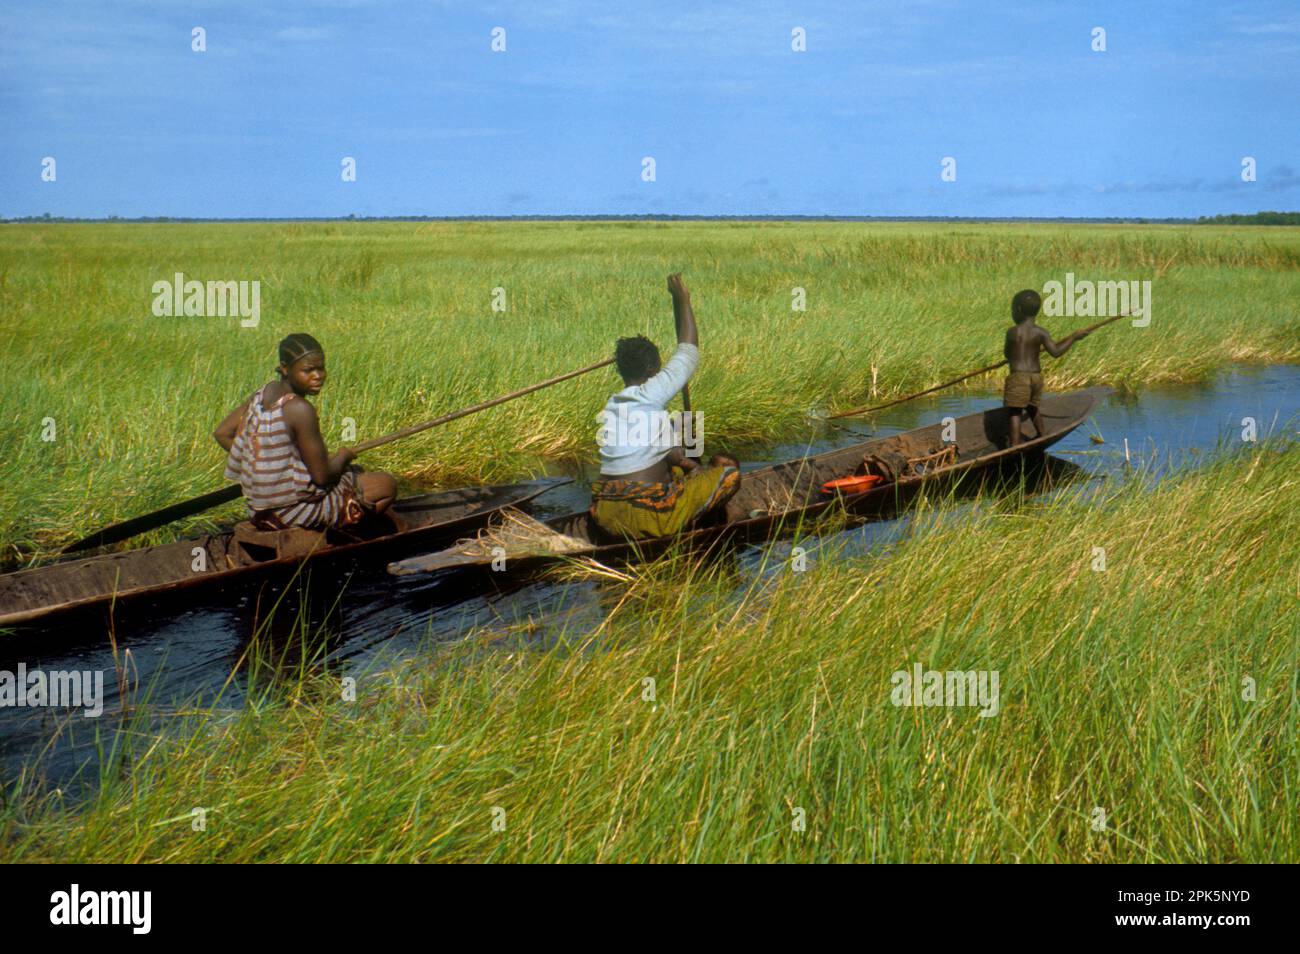 Afrika, Demokratische Republik Kongo, Ngiri River Area: Frauen der ethnischen Gruppe der Libinza im Kanu in der Sumpfsavanne, gehen in den Sumpfwald, um zu fischen und Trinkwasser zu sammeln Stockfoto